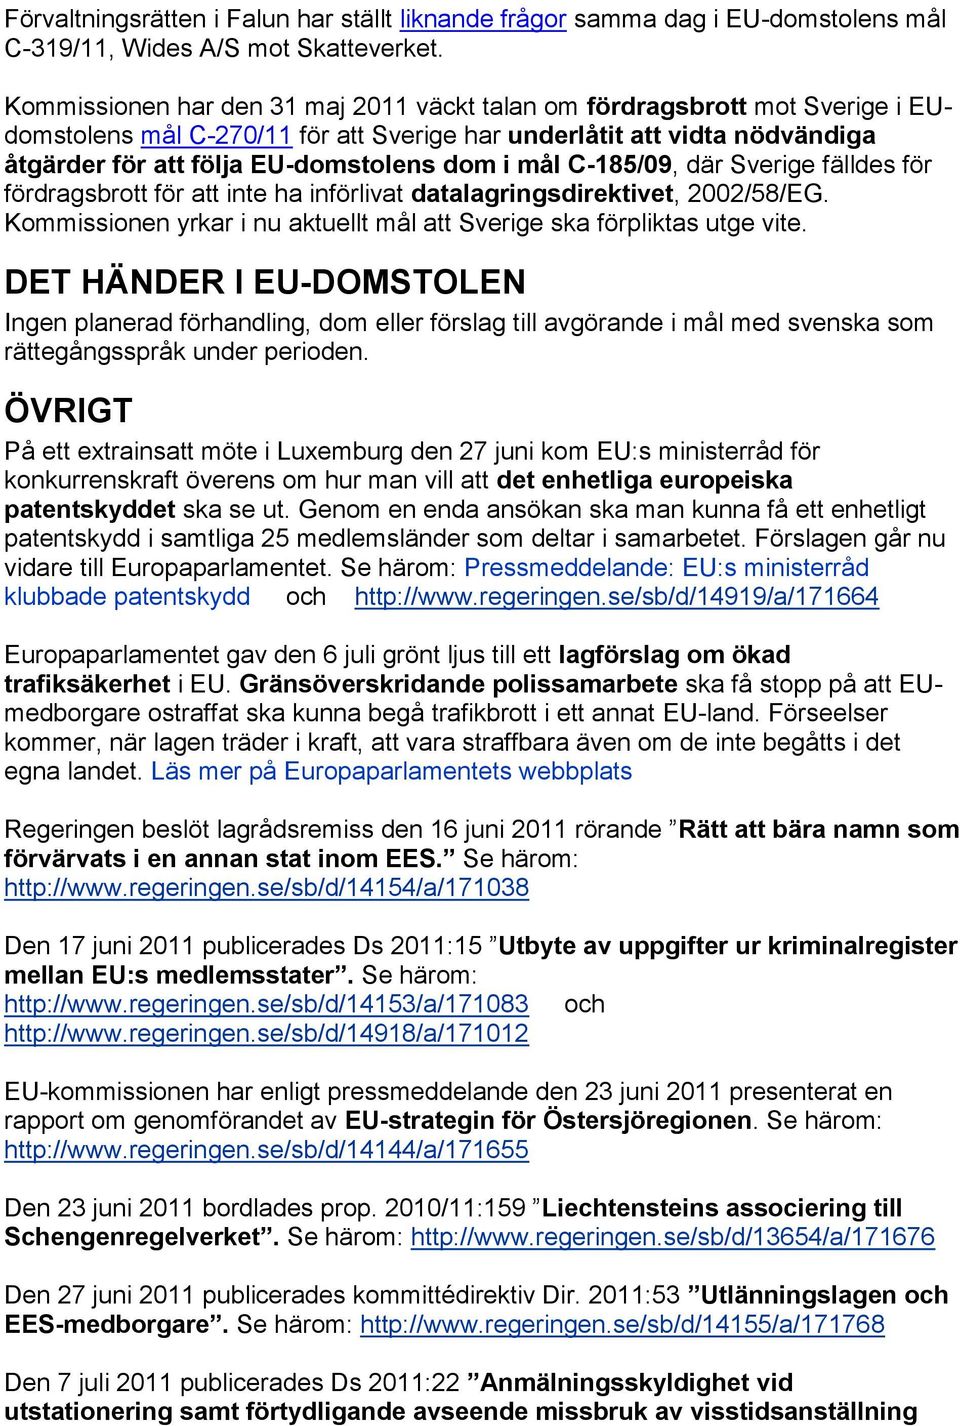 mål C-185/09, där Sverige fälldes för fördragsbrott för att inte ha införlivat datalagringsdirektivet, 2002/58/EG. Kommissionen yrkar i nu aktuellt mål att Sverige ska förpliktas utge vite.